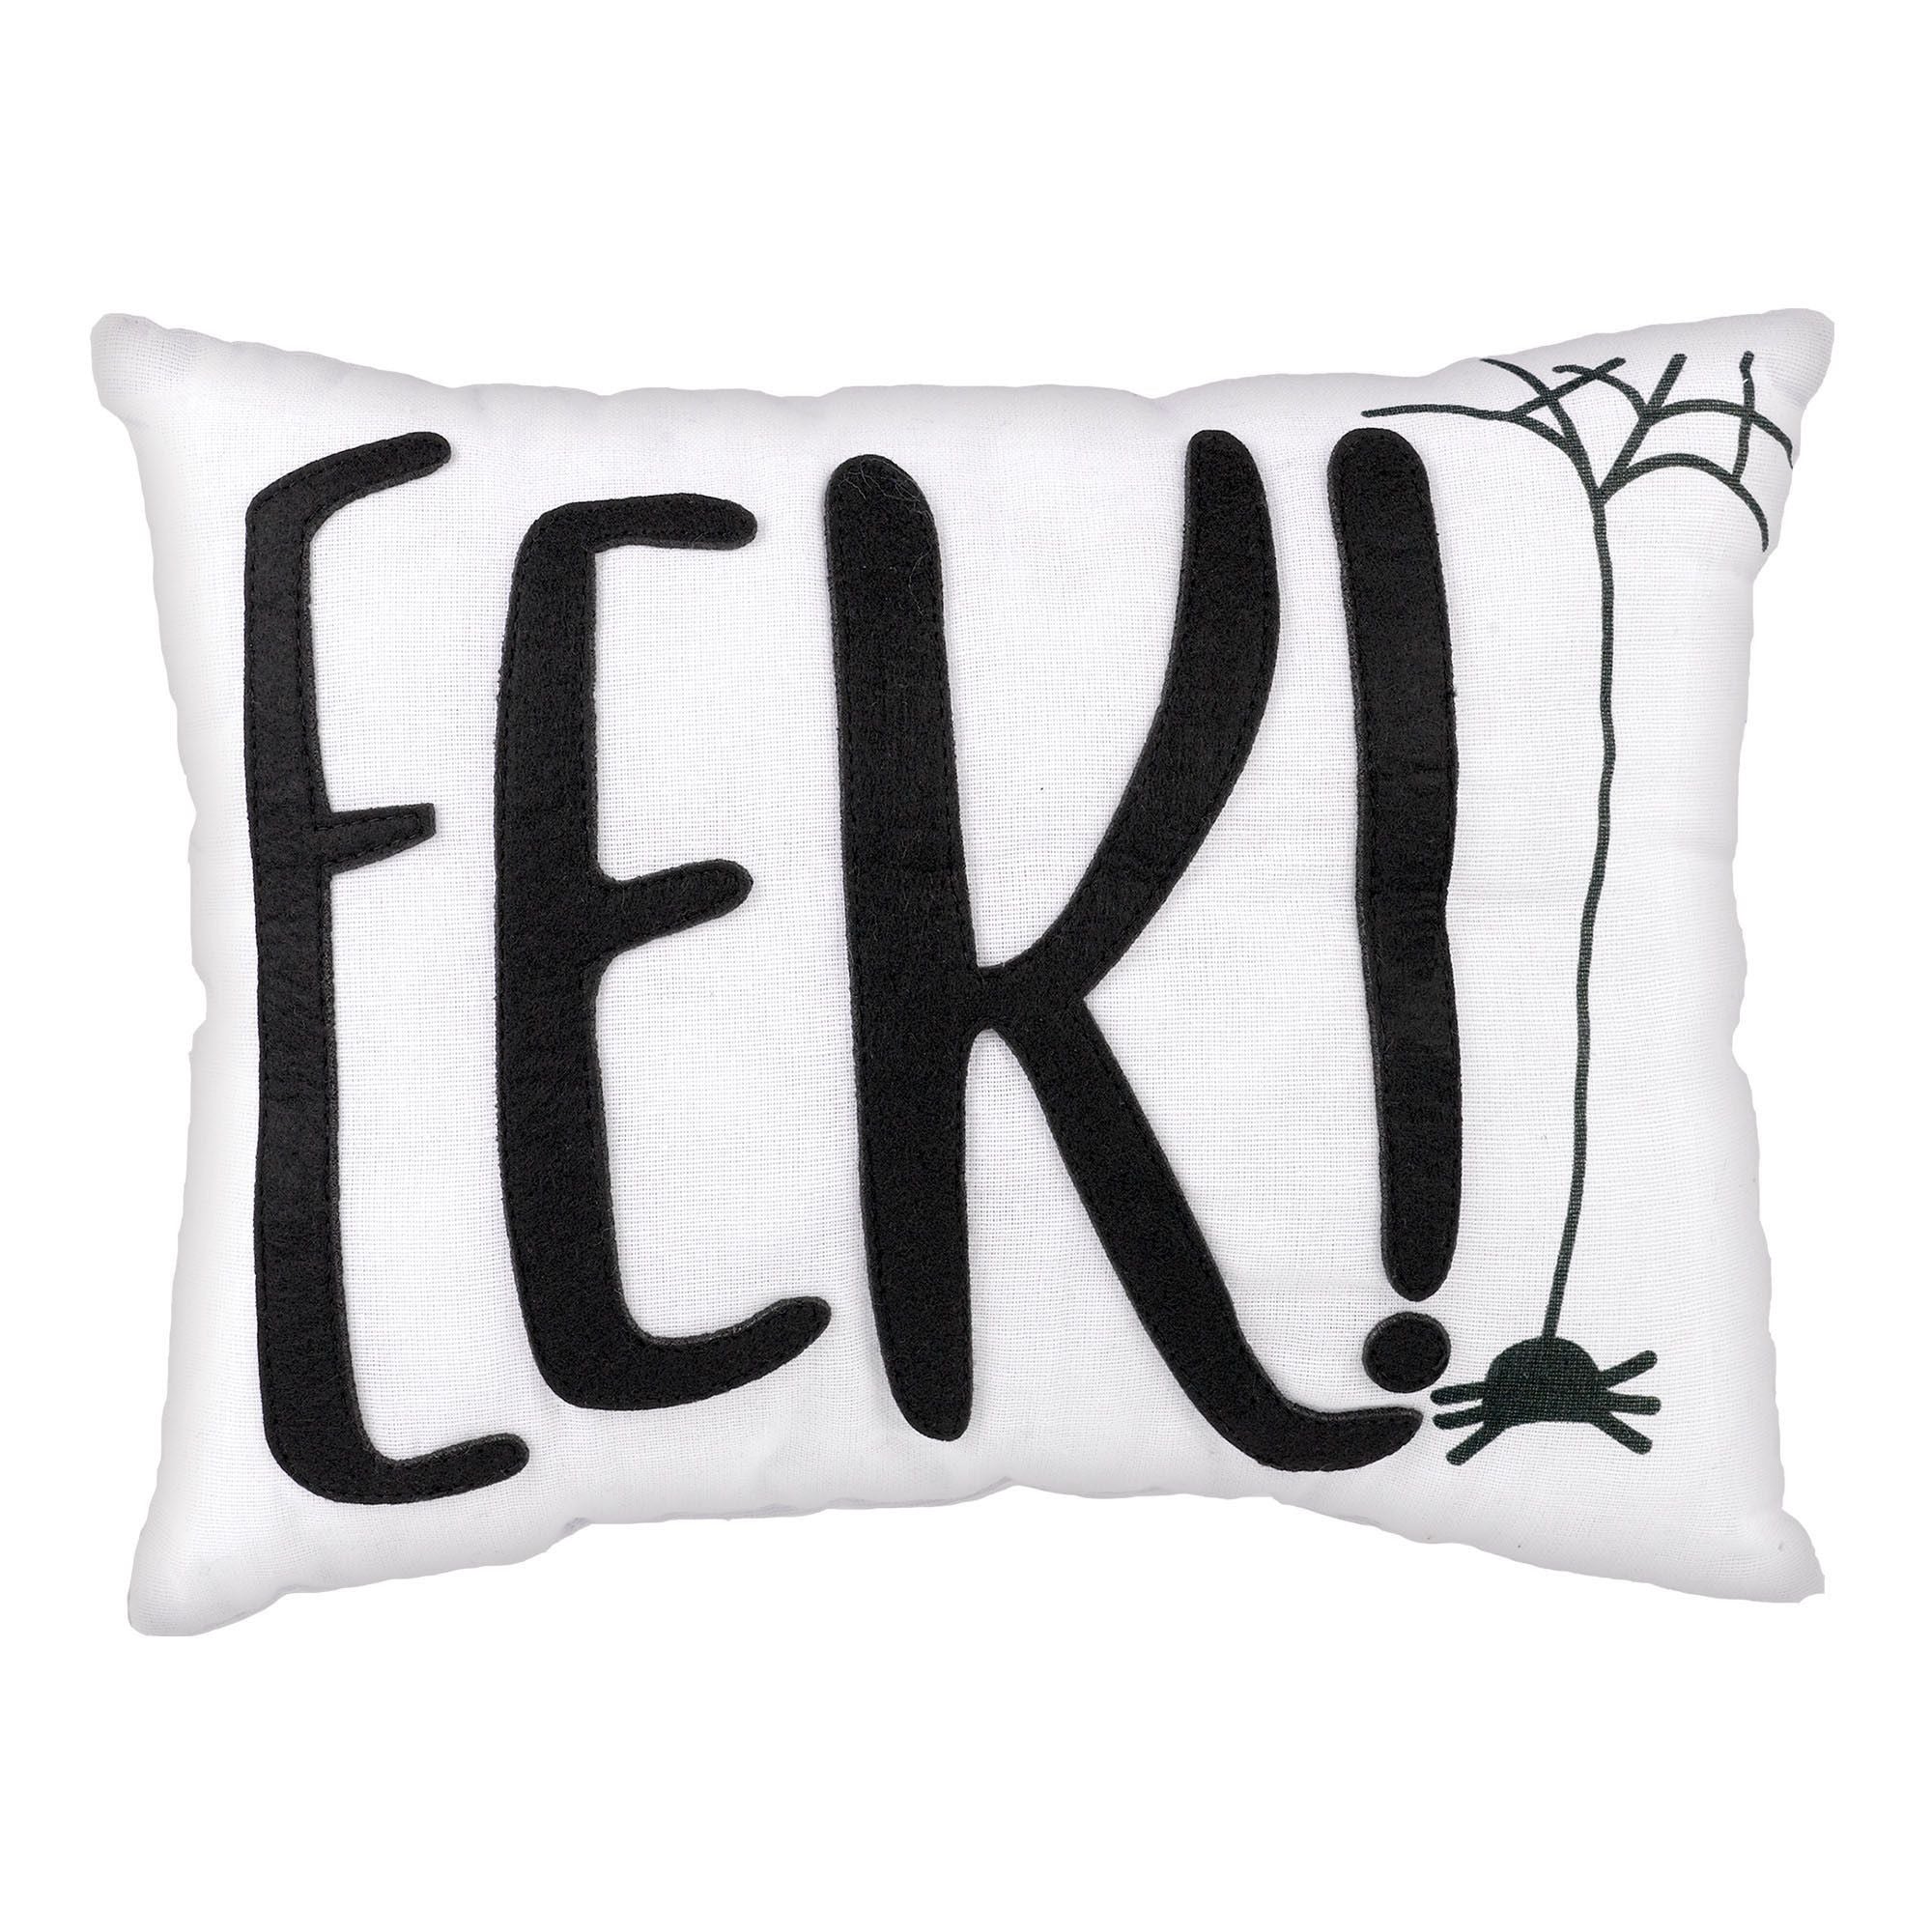 EEK! Fabric Pillow